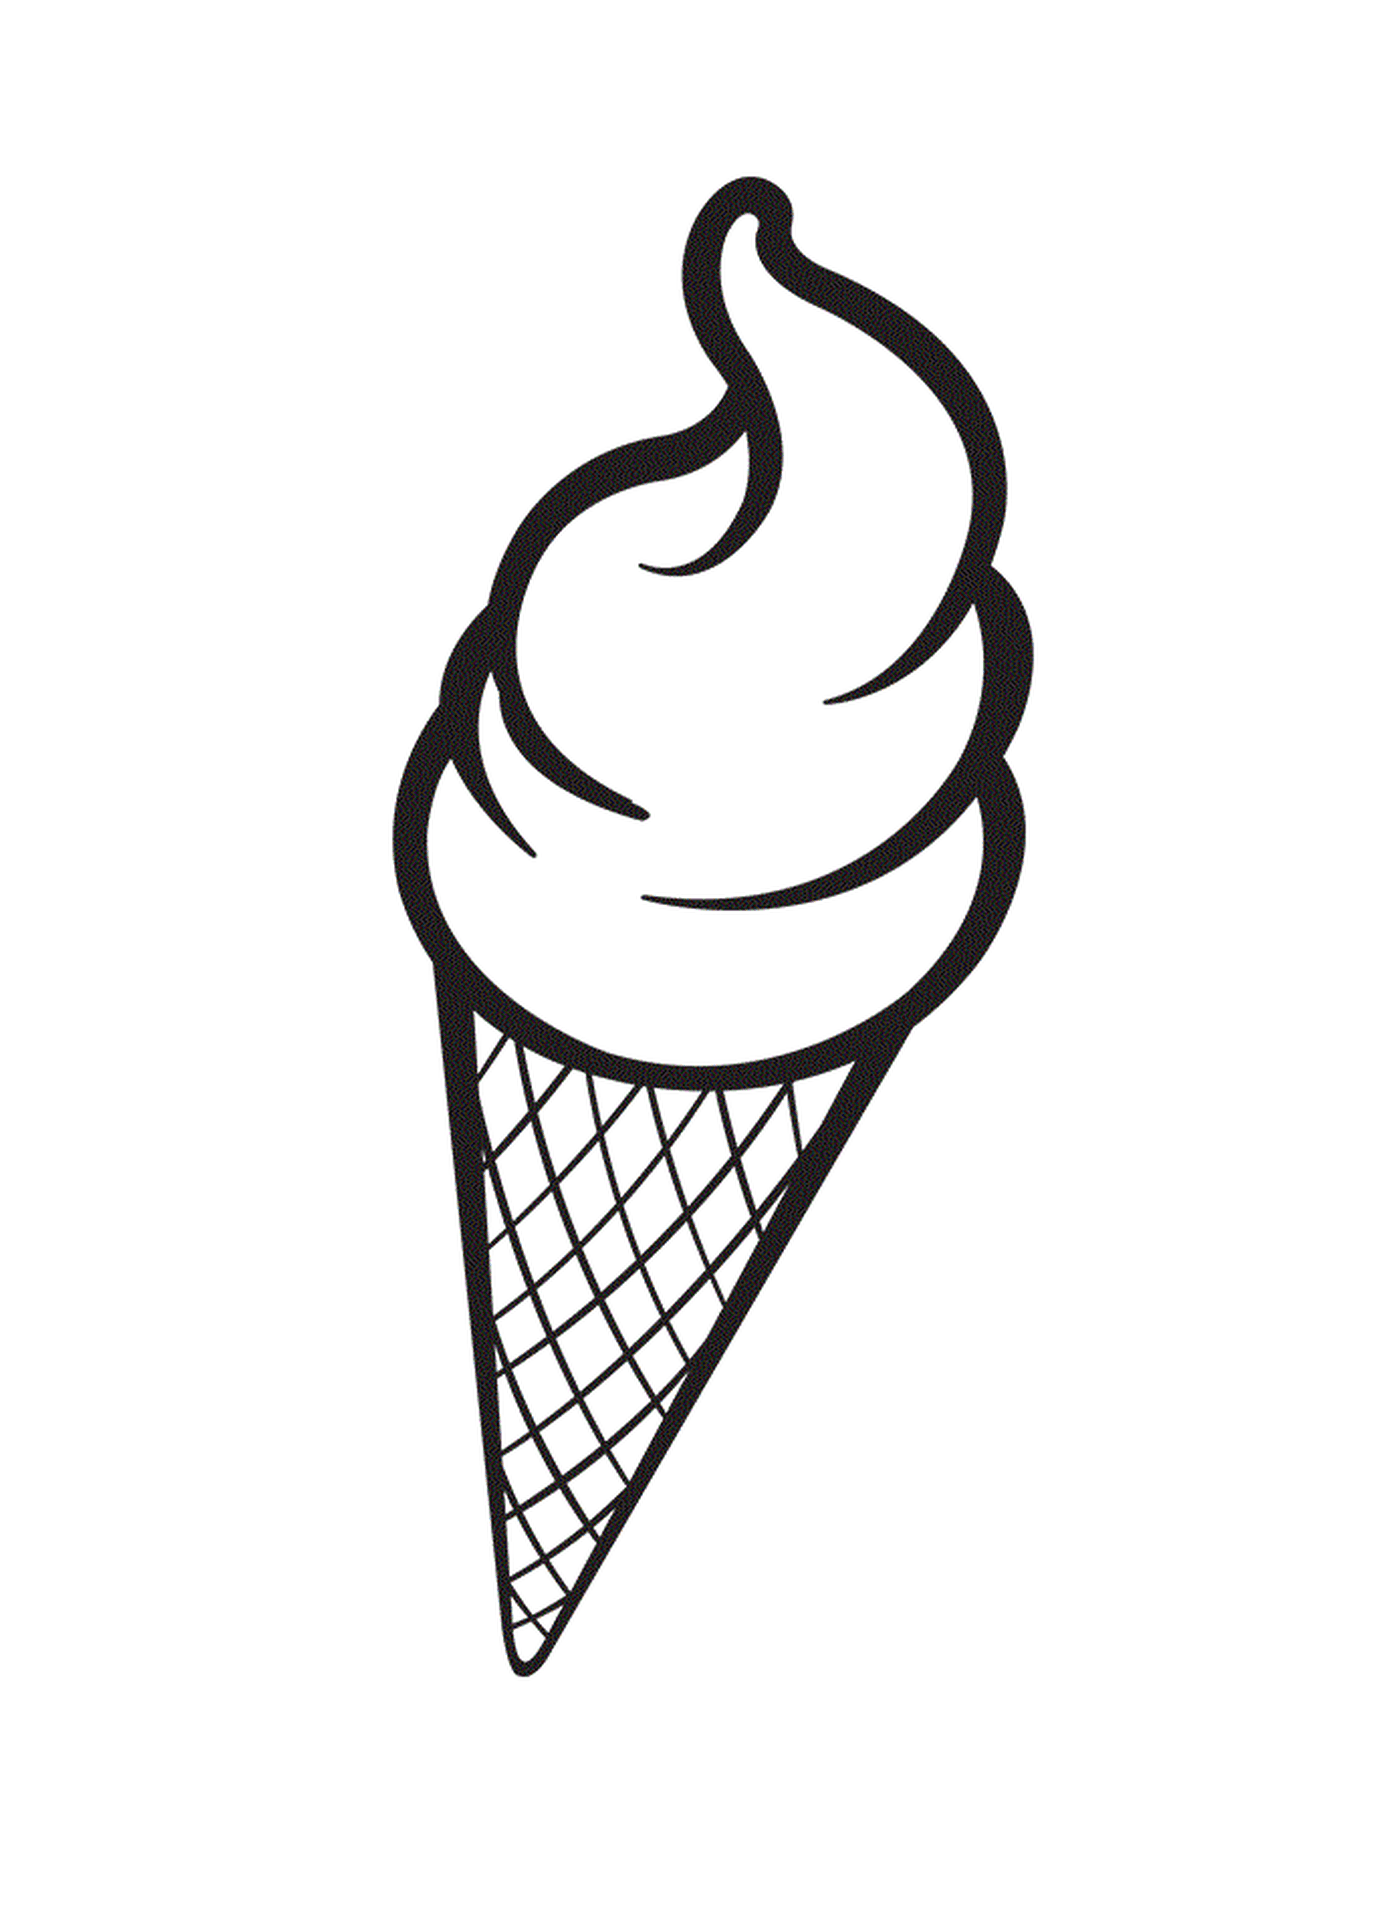  Delicioso helado para vacaciones de verano 